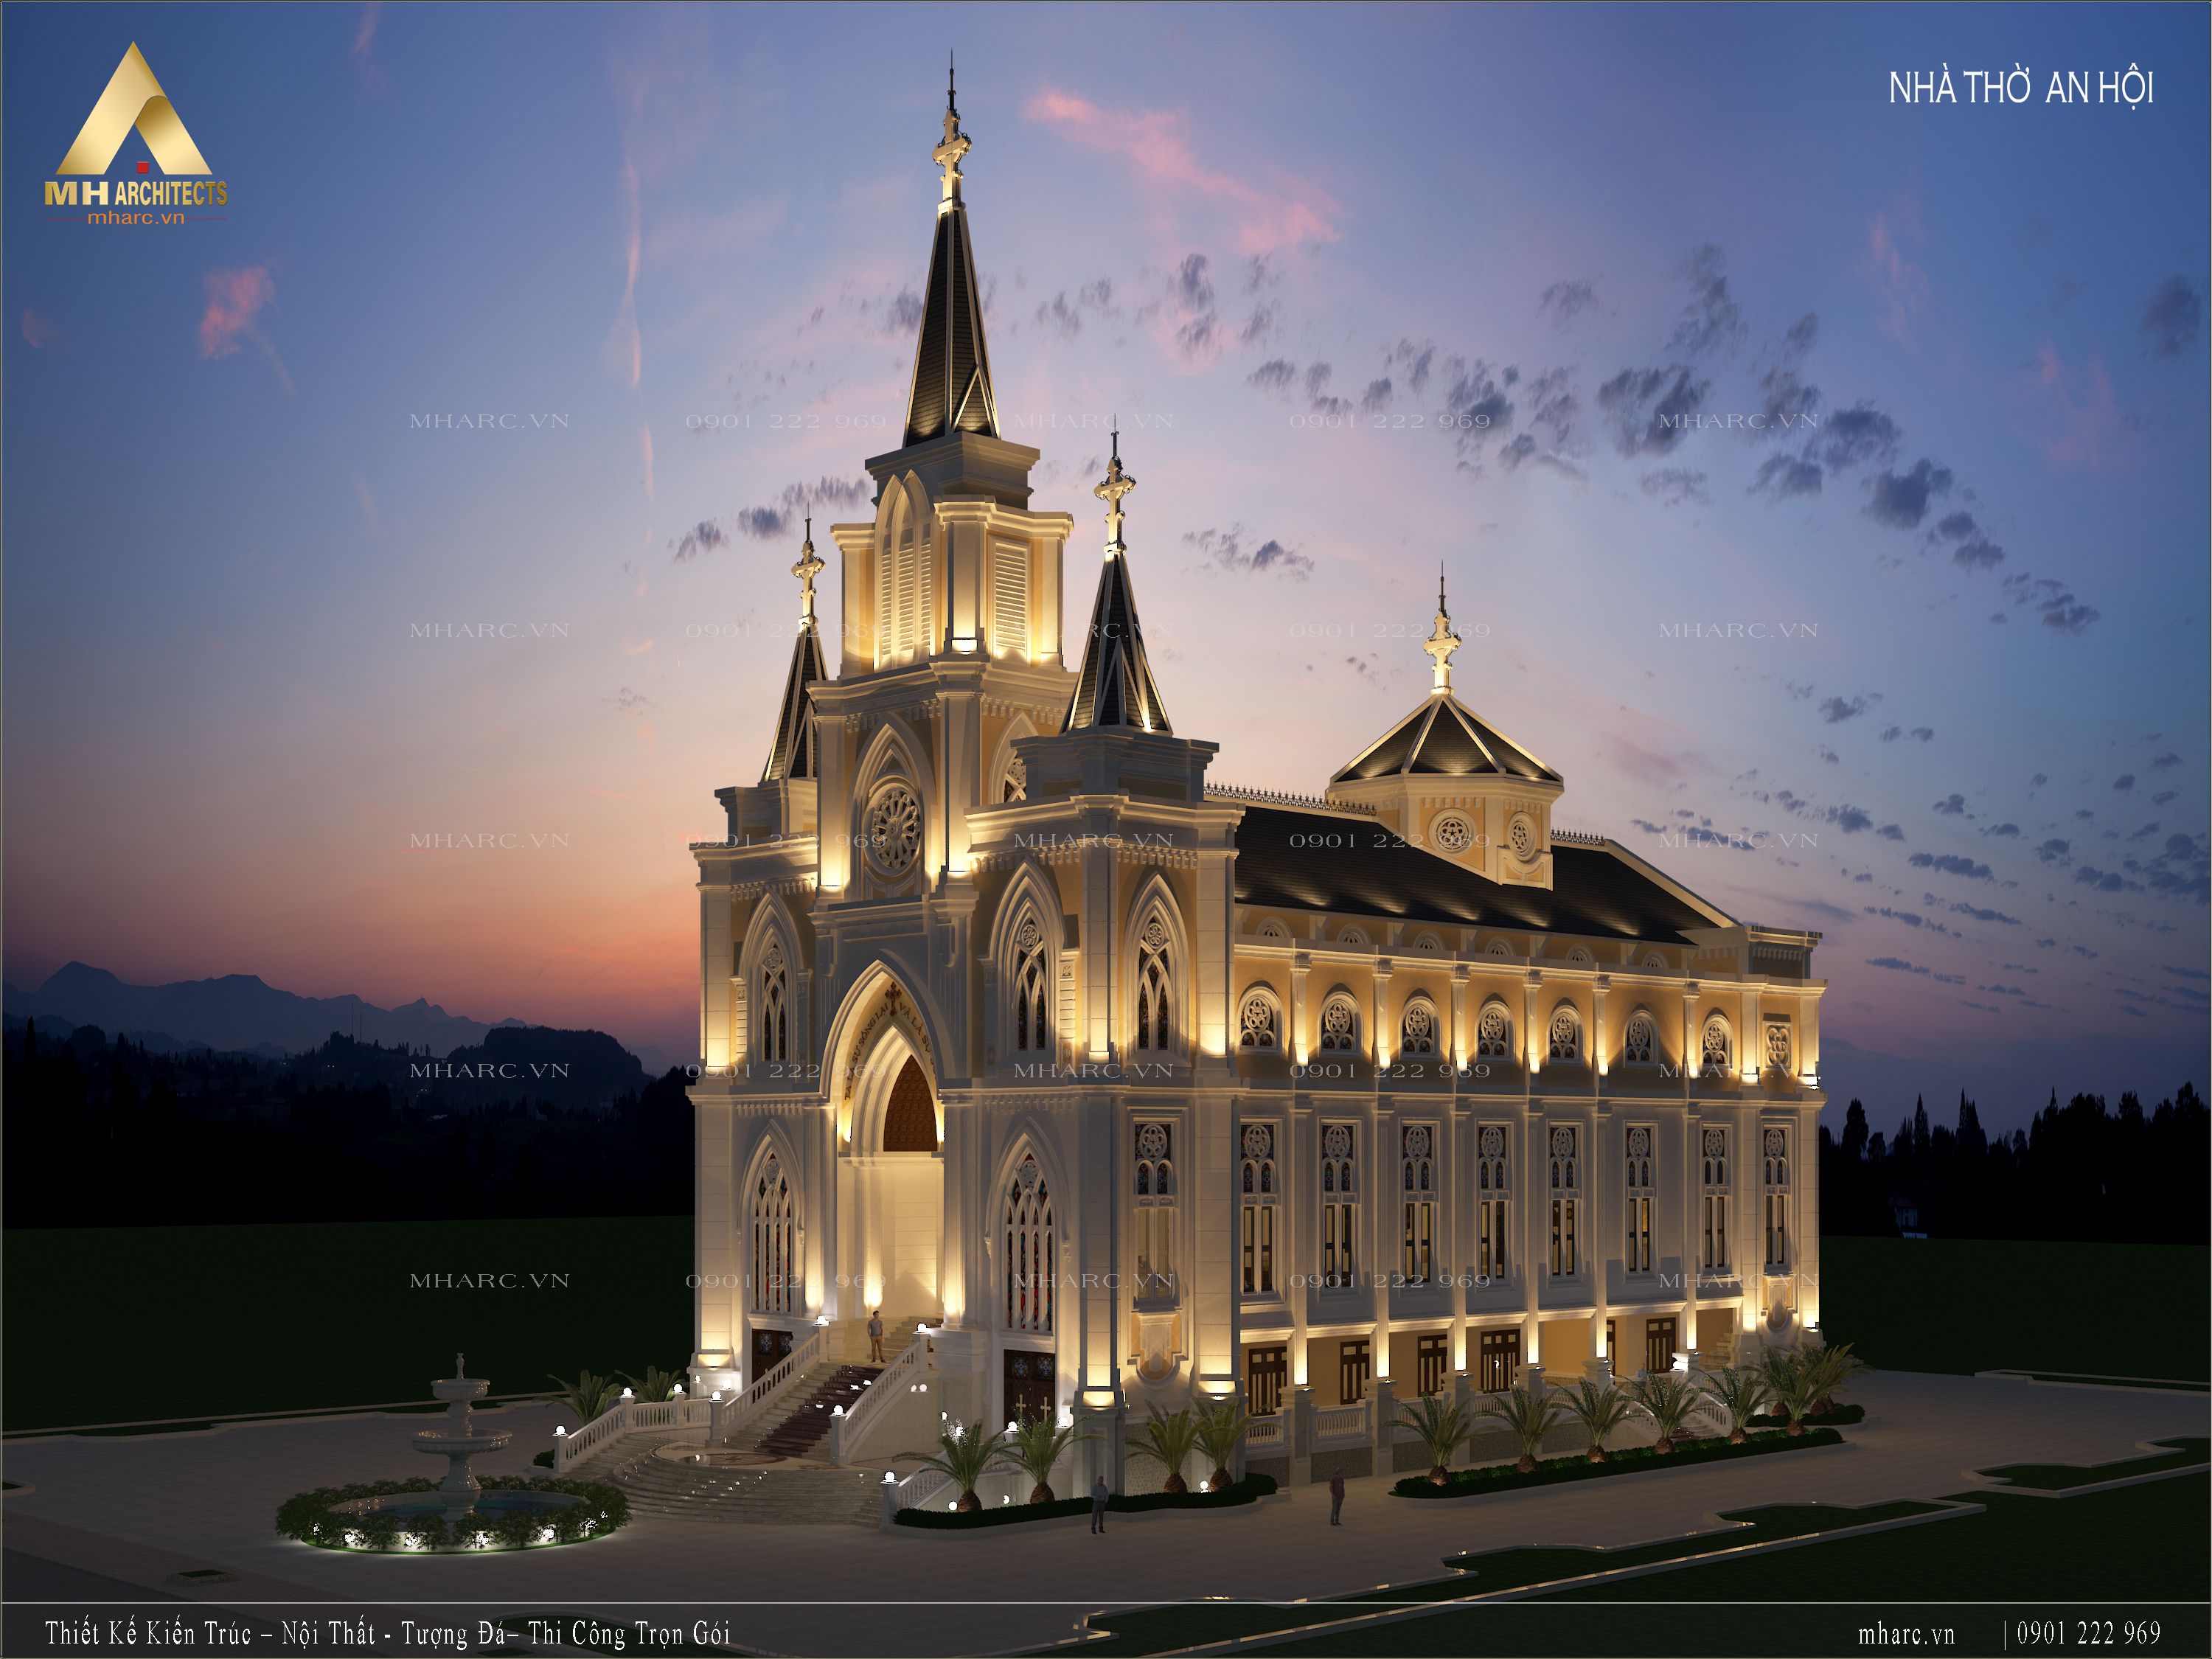 Thiết kế nhà thờ An Hội nung linh khi đêm về